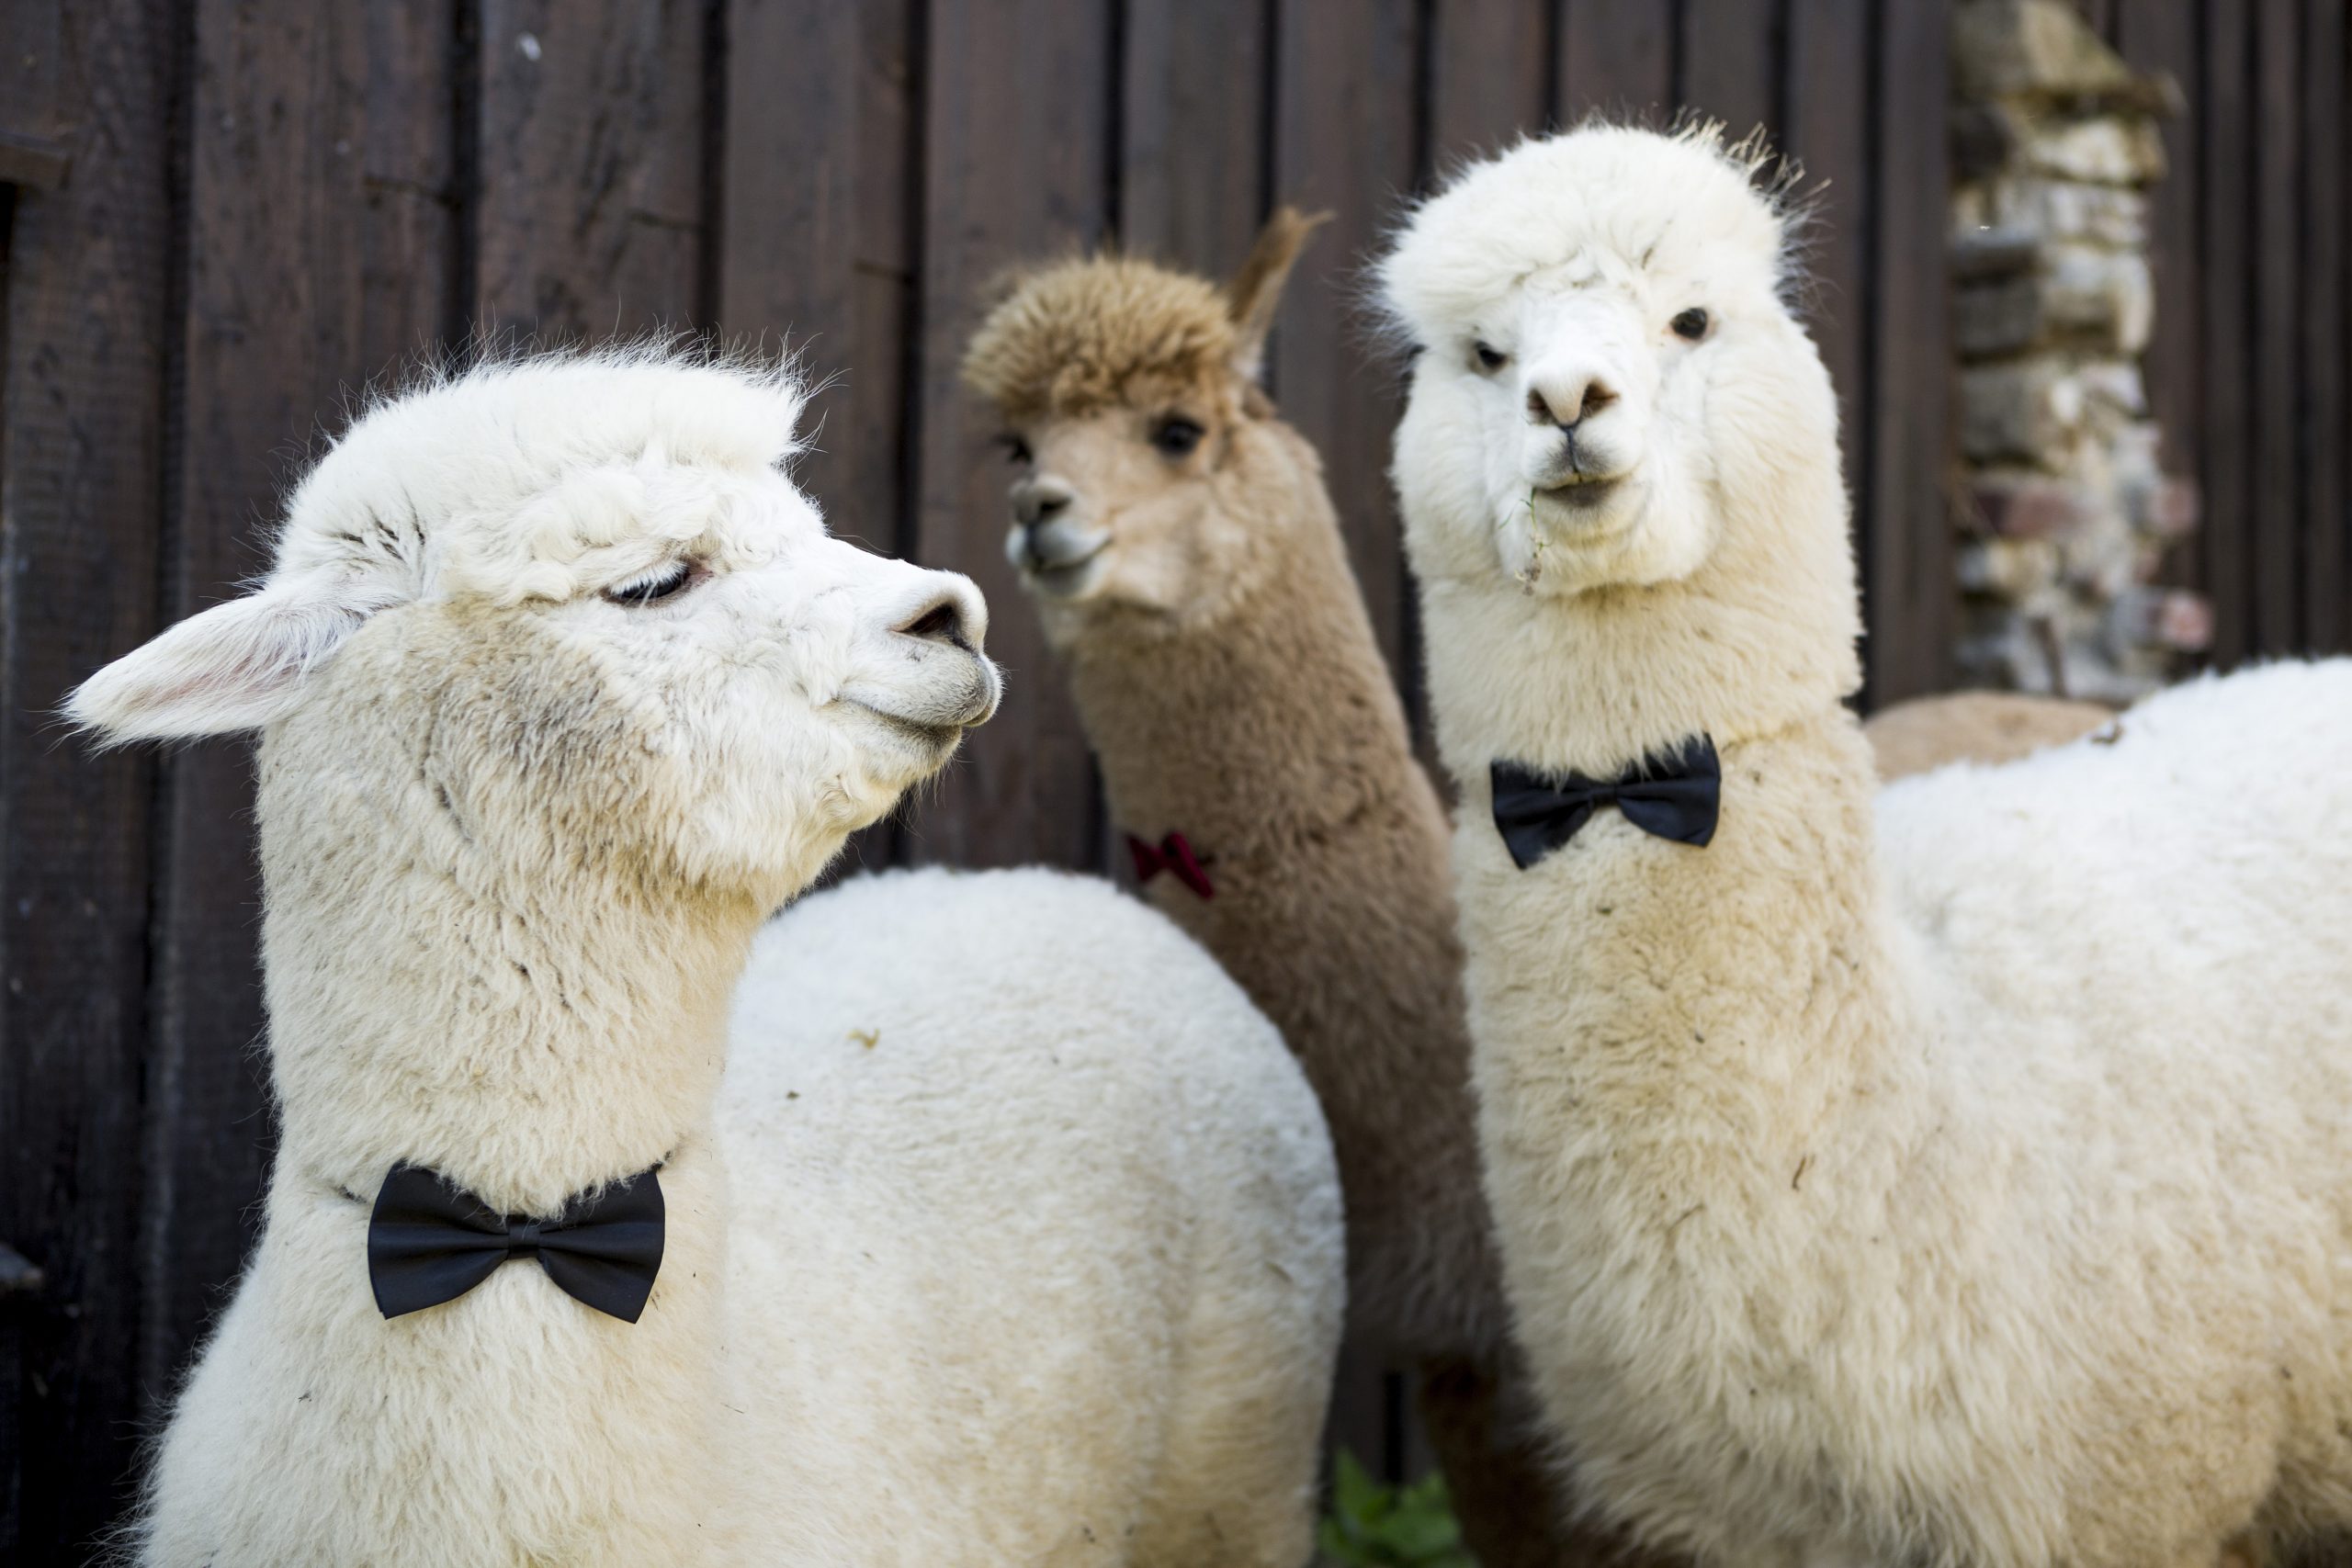 Three tame alpacas wearing bow ties